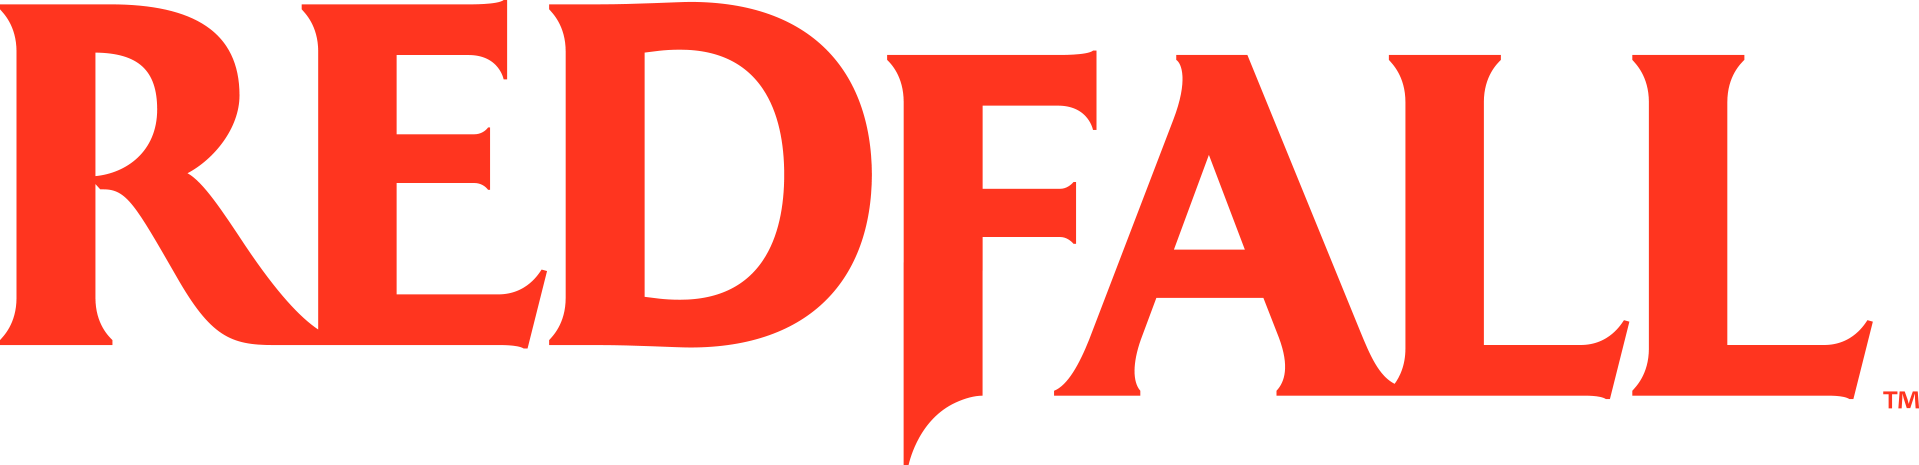 Redfall logo.png